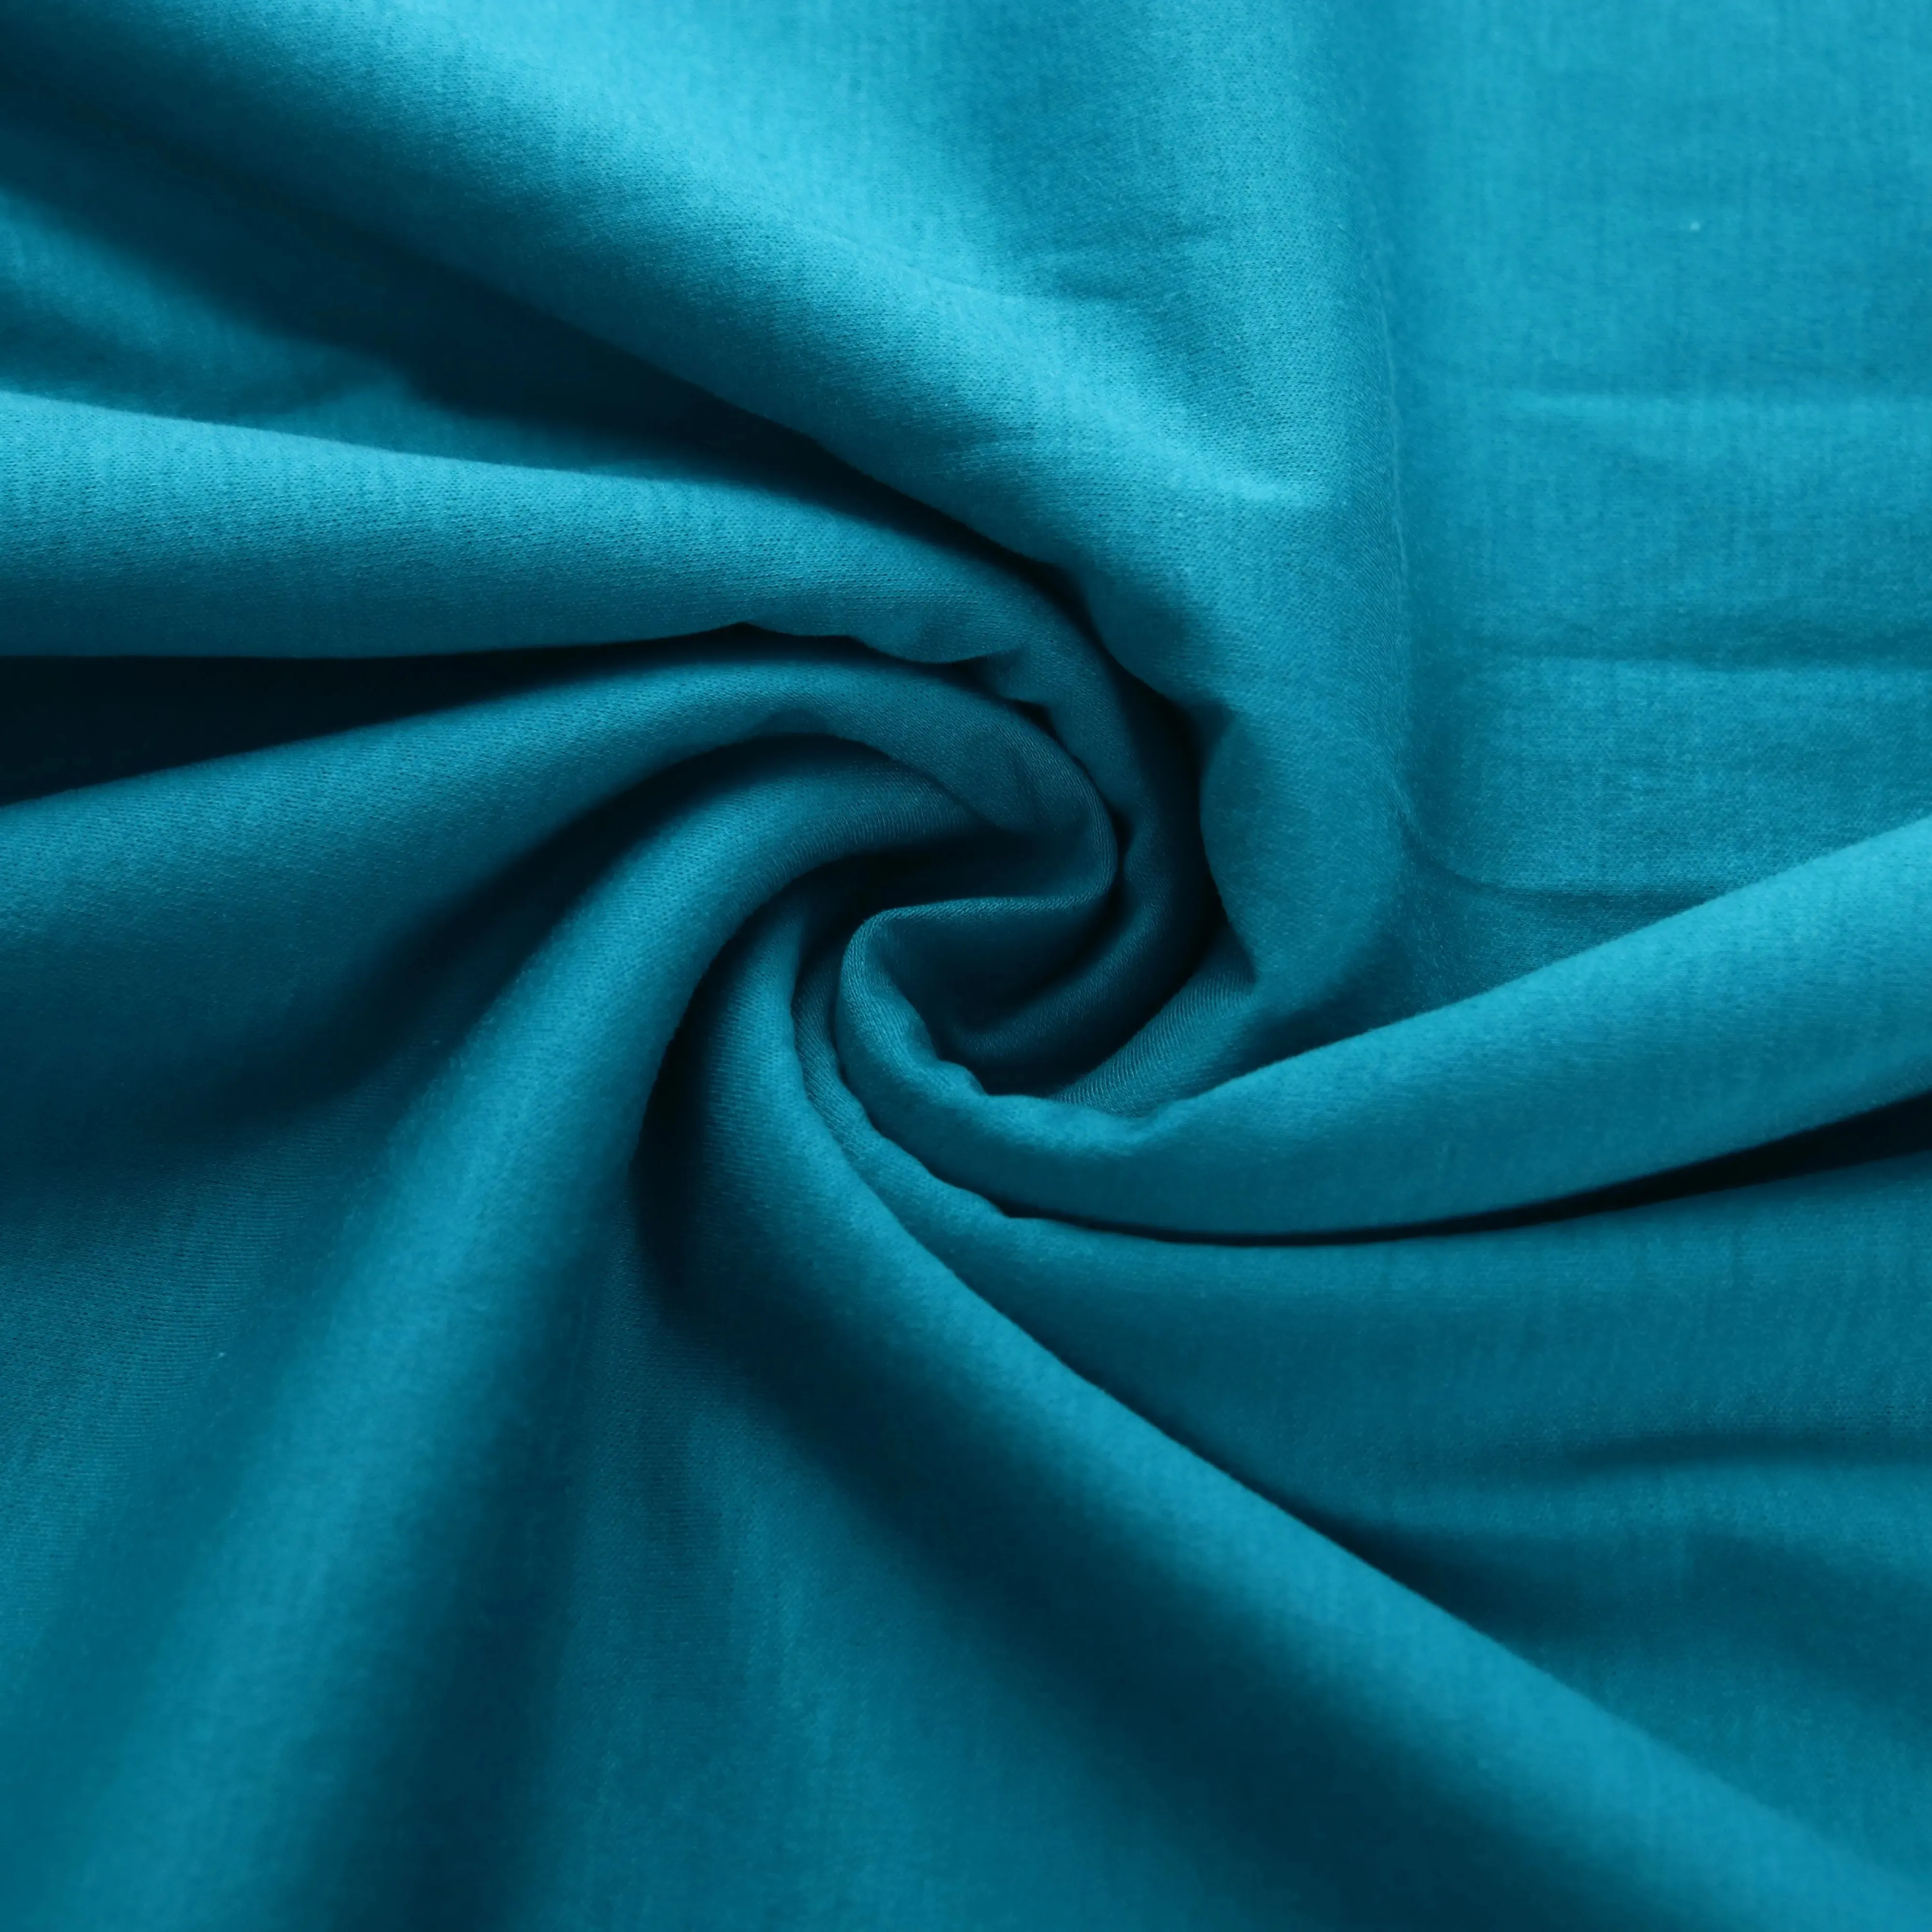 50s 190gsm Personalización 100% algodón mercerizado interlock tejido antibacterias transpirable tela transparente para ropa de verano